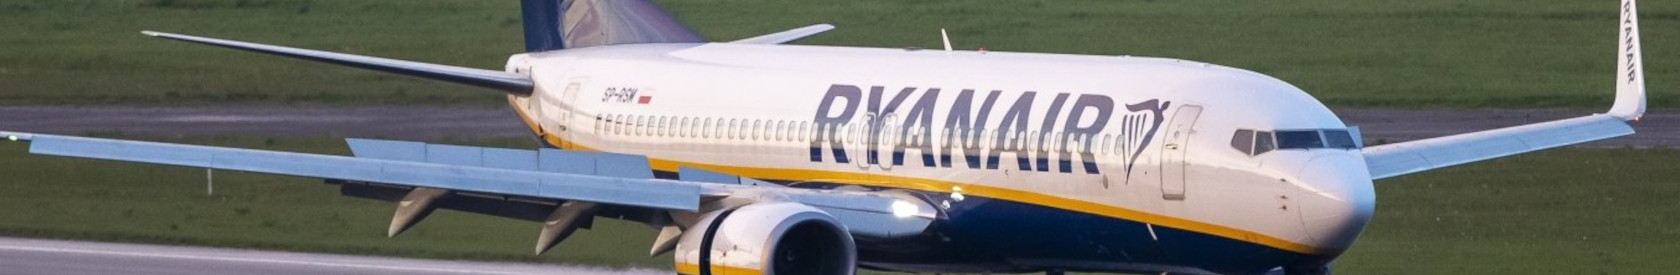 ICAO pripažįsta, kad priverstinis neplanuotas RYANAIR skrydžio nusileidimas yra neteisėtas Baltarusijos vyriausybės kišimasis į civilinės aviacijos veiklą